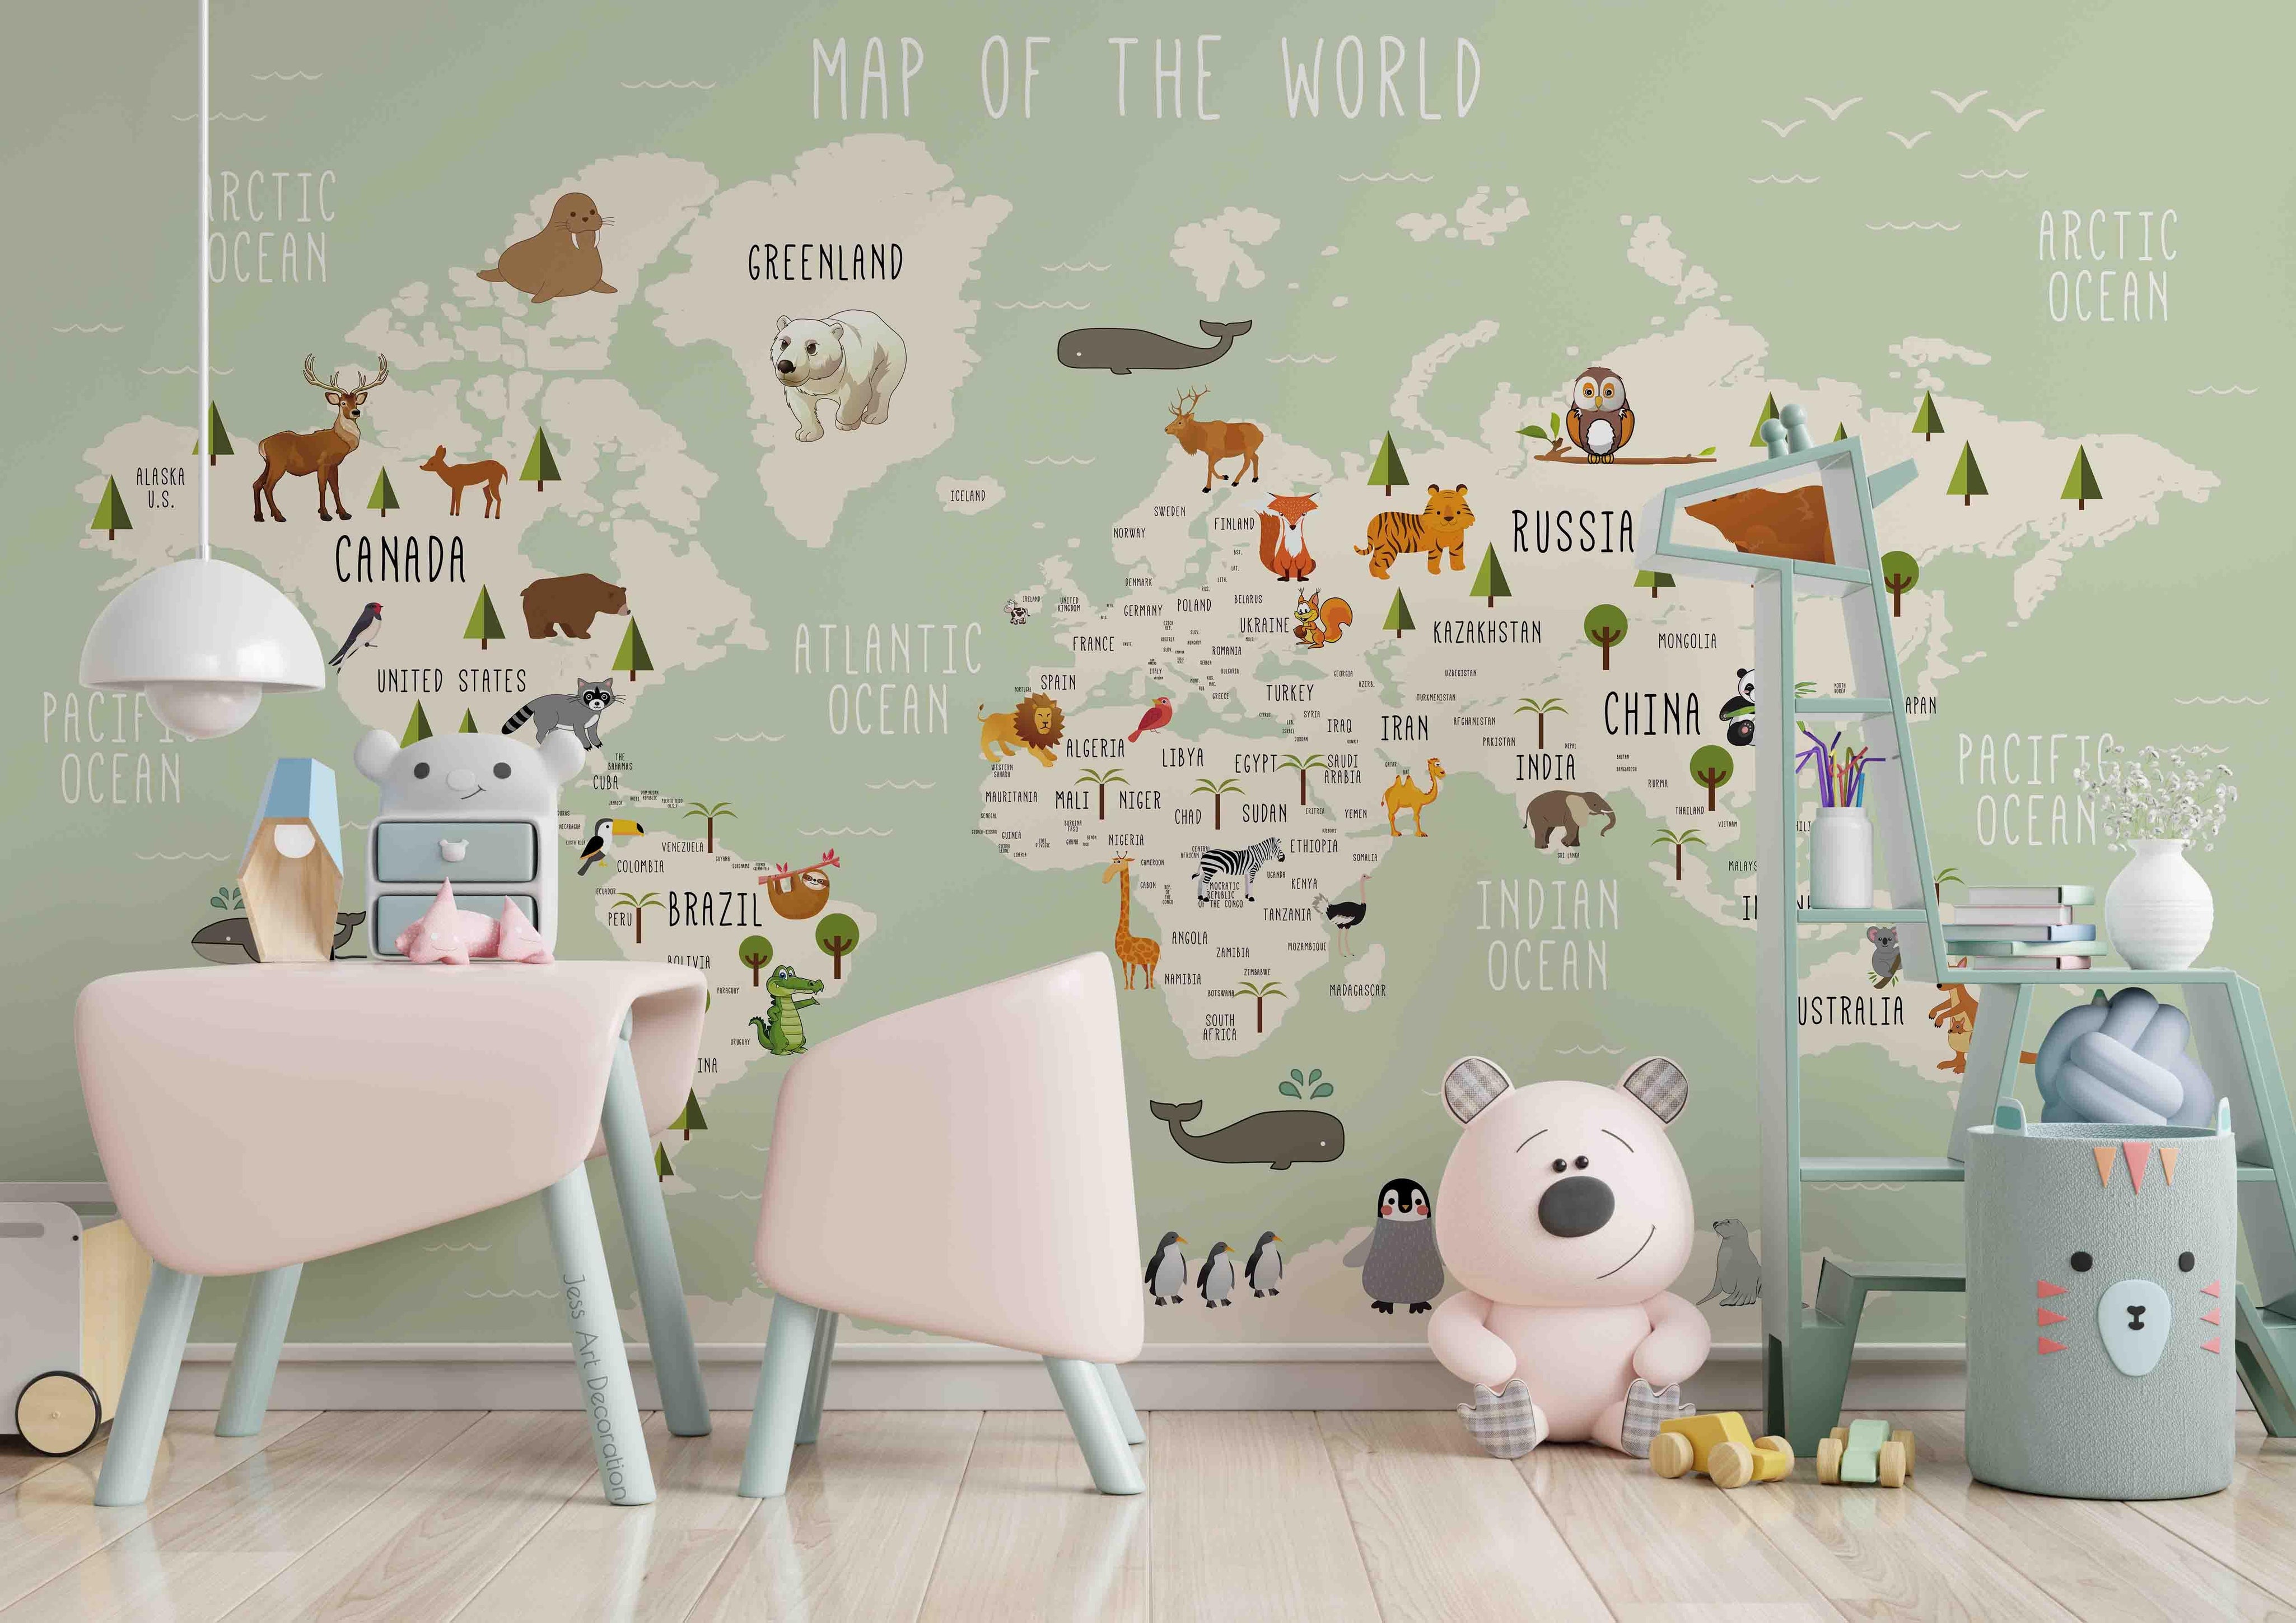 3D Cartoon Animal World Map Wall Mural Wallpaper sww 18- Jess Art Decoration